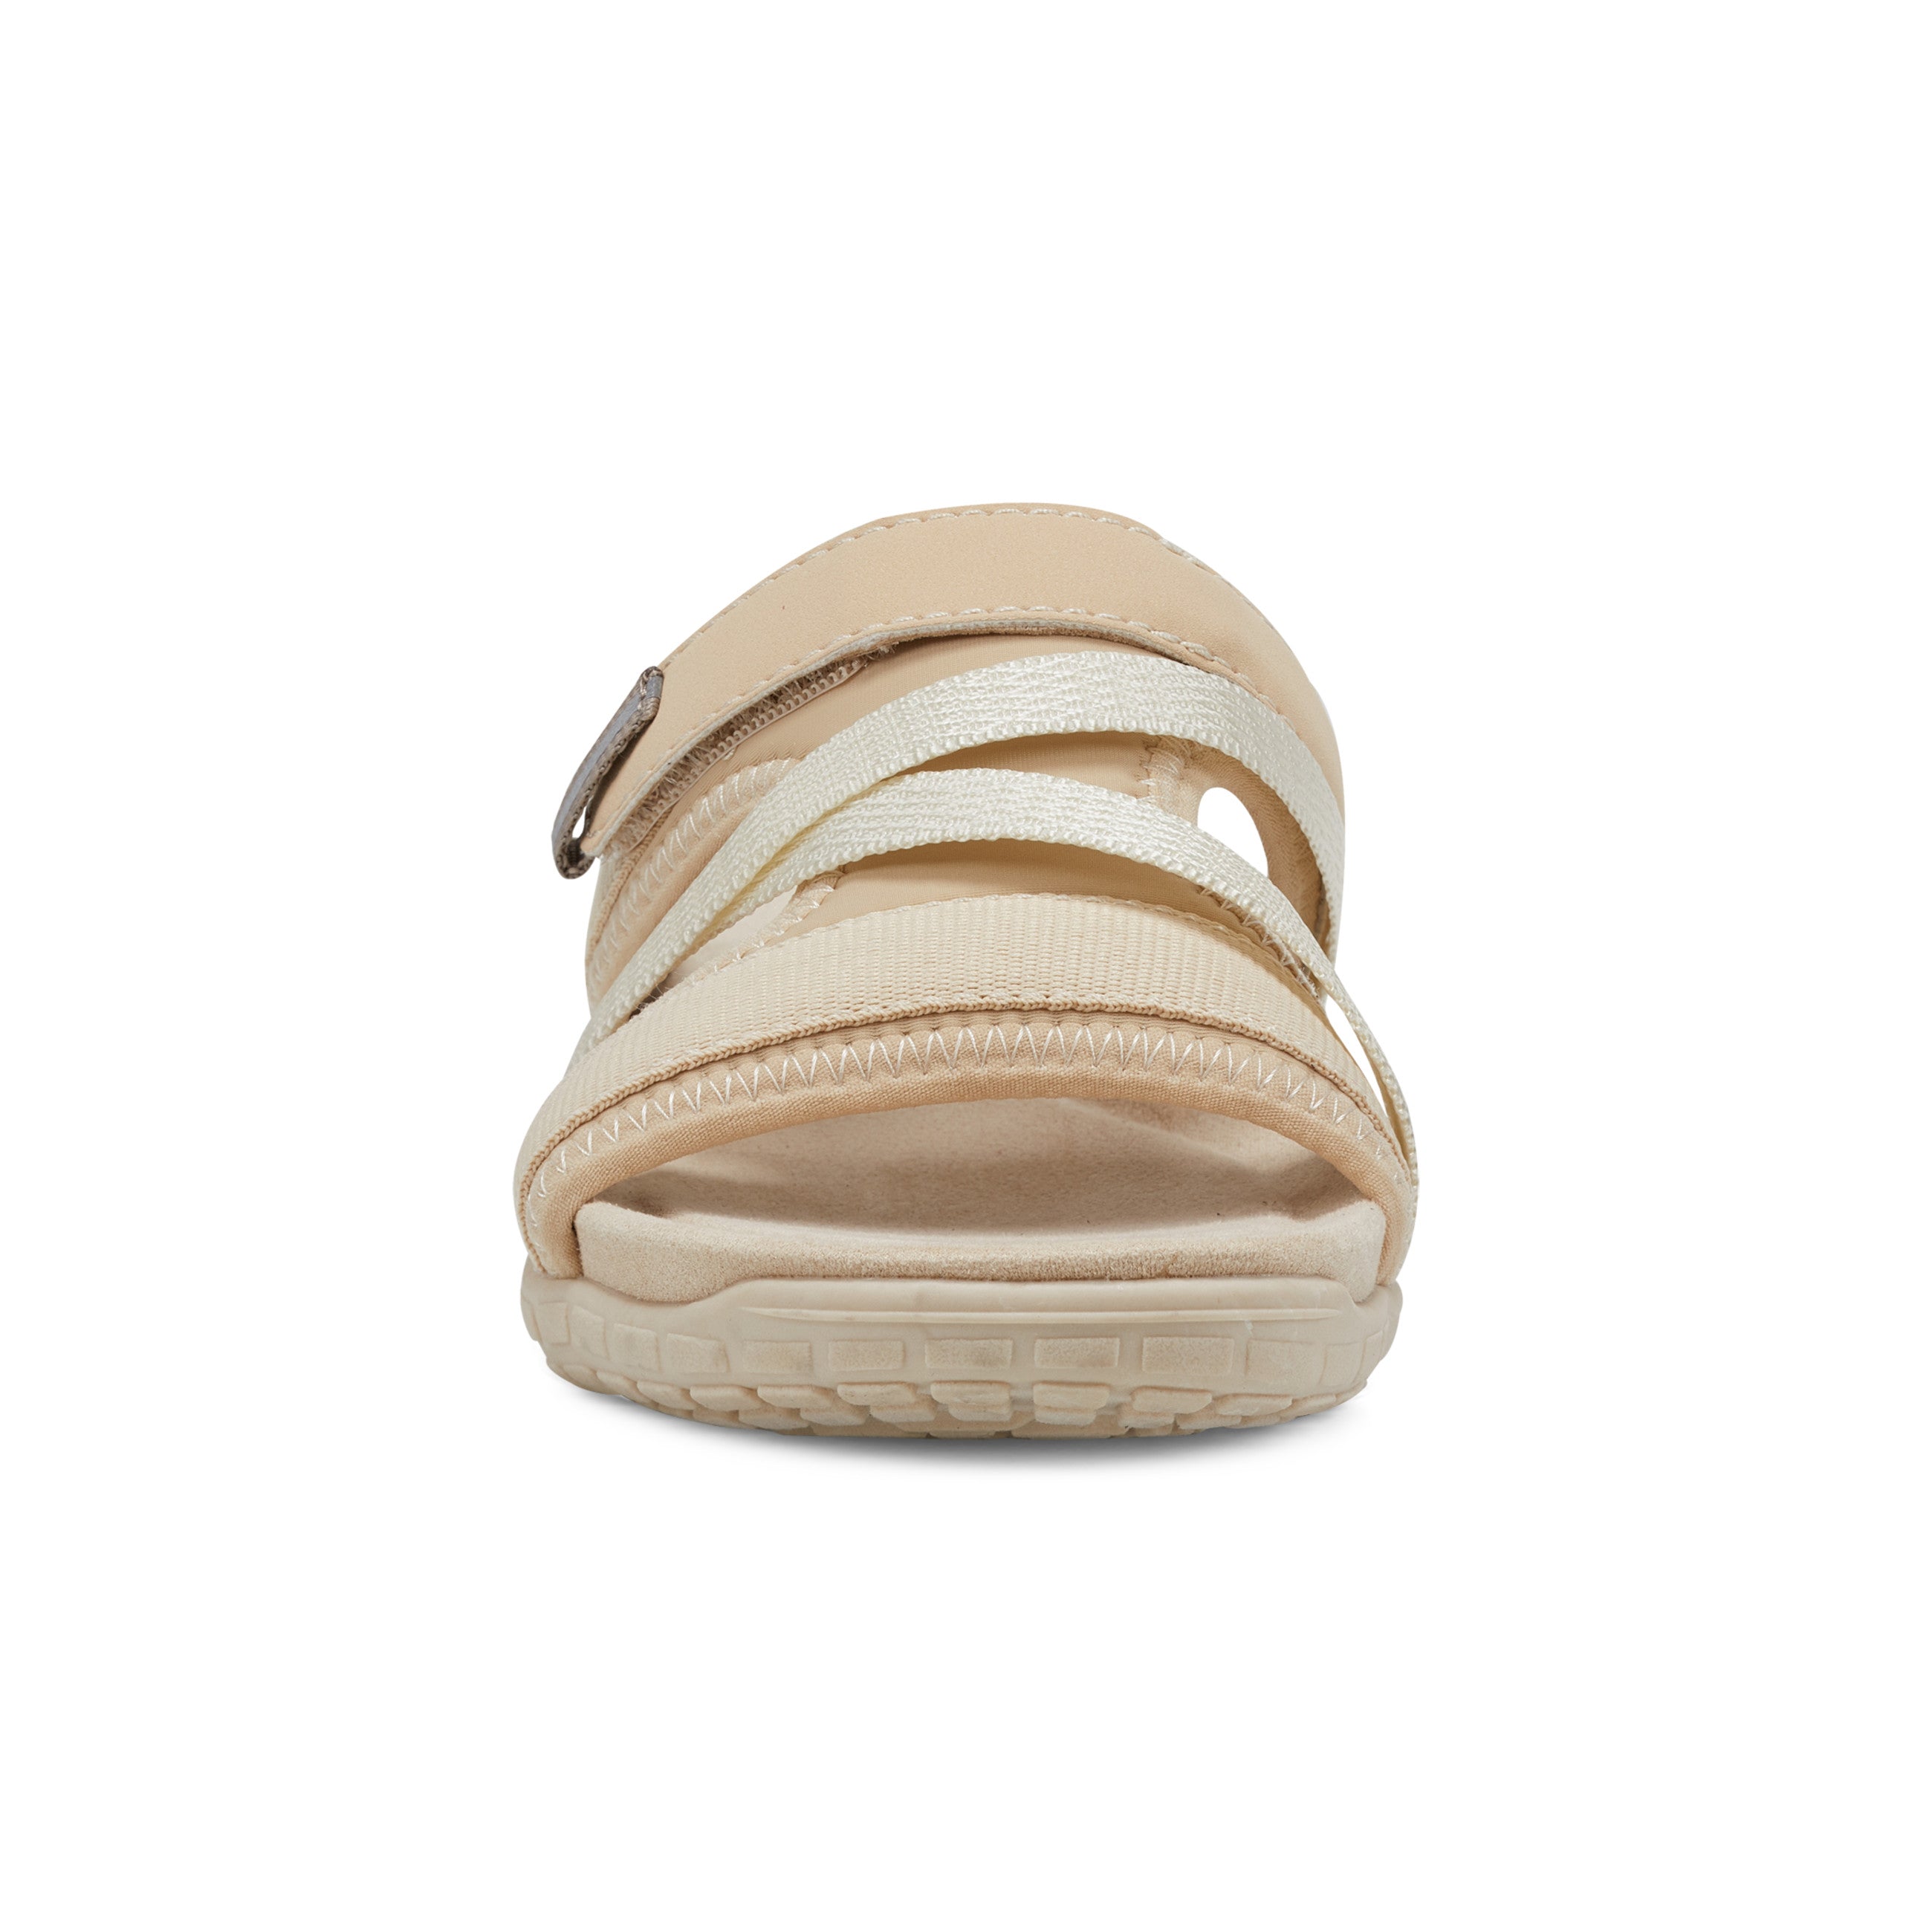 Shells Flat Sandals